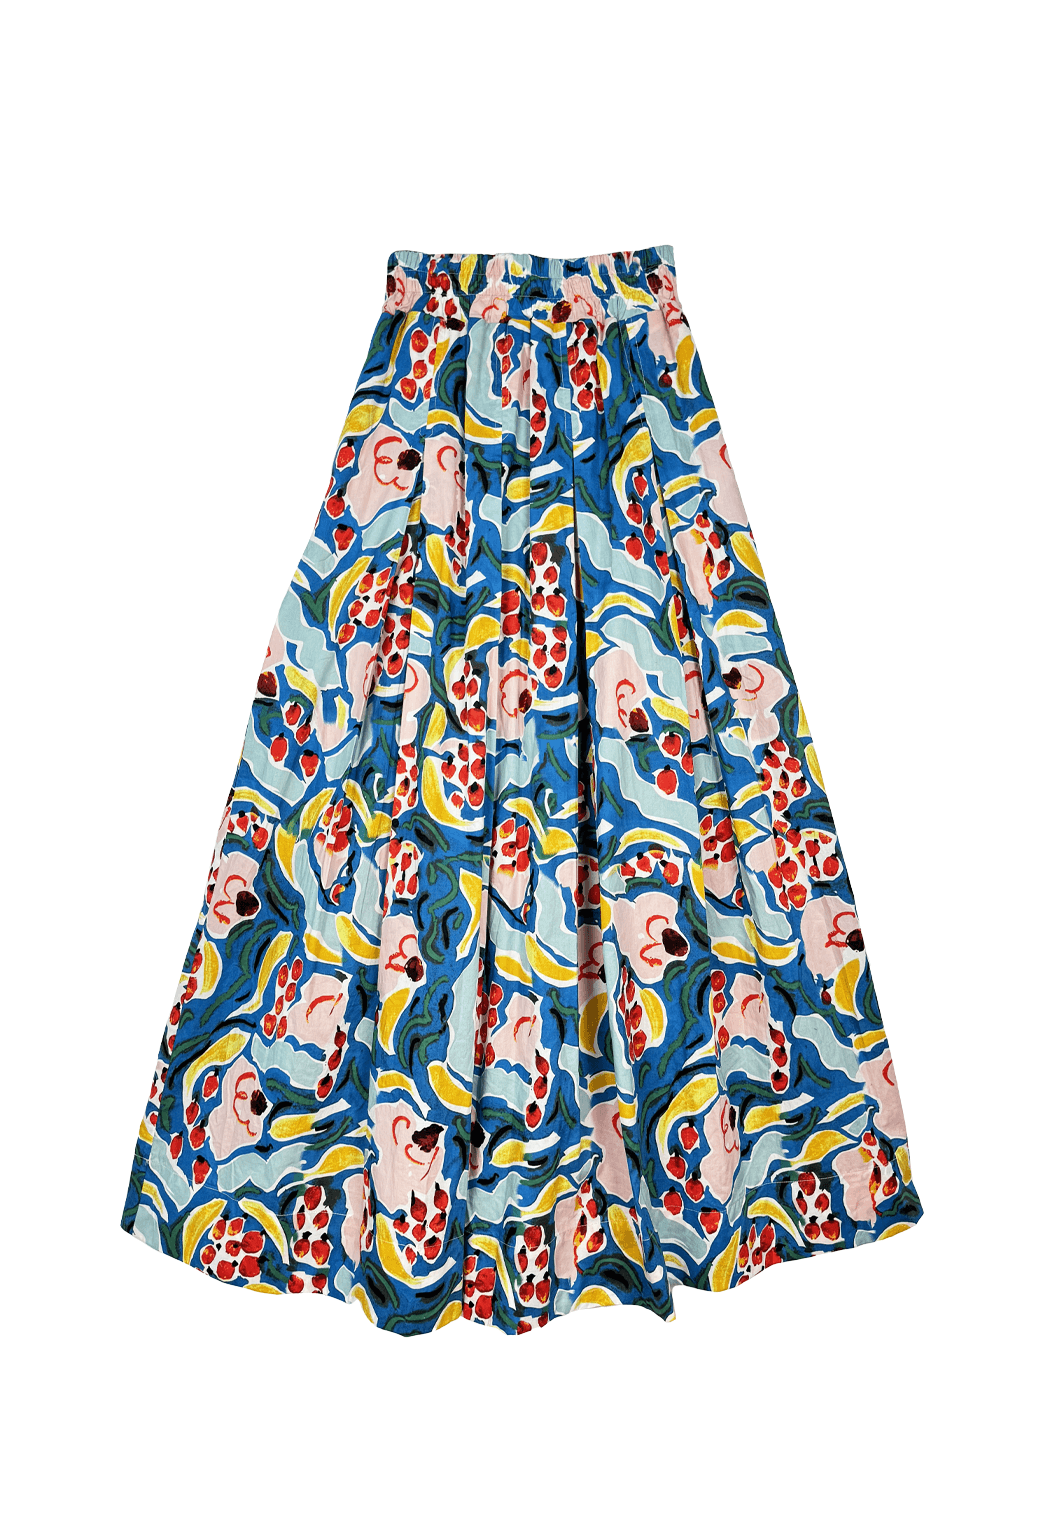 Banana Republic Khaki Asymmetrical Skirt Women's Size 6 NEW - beyond  exchange